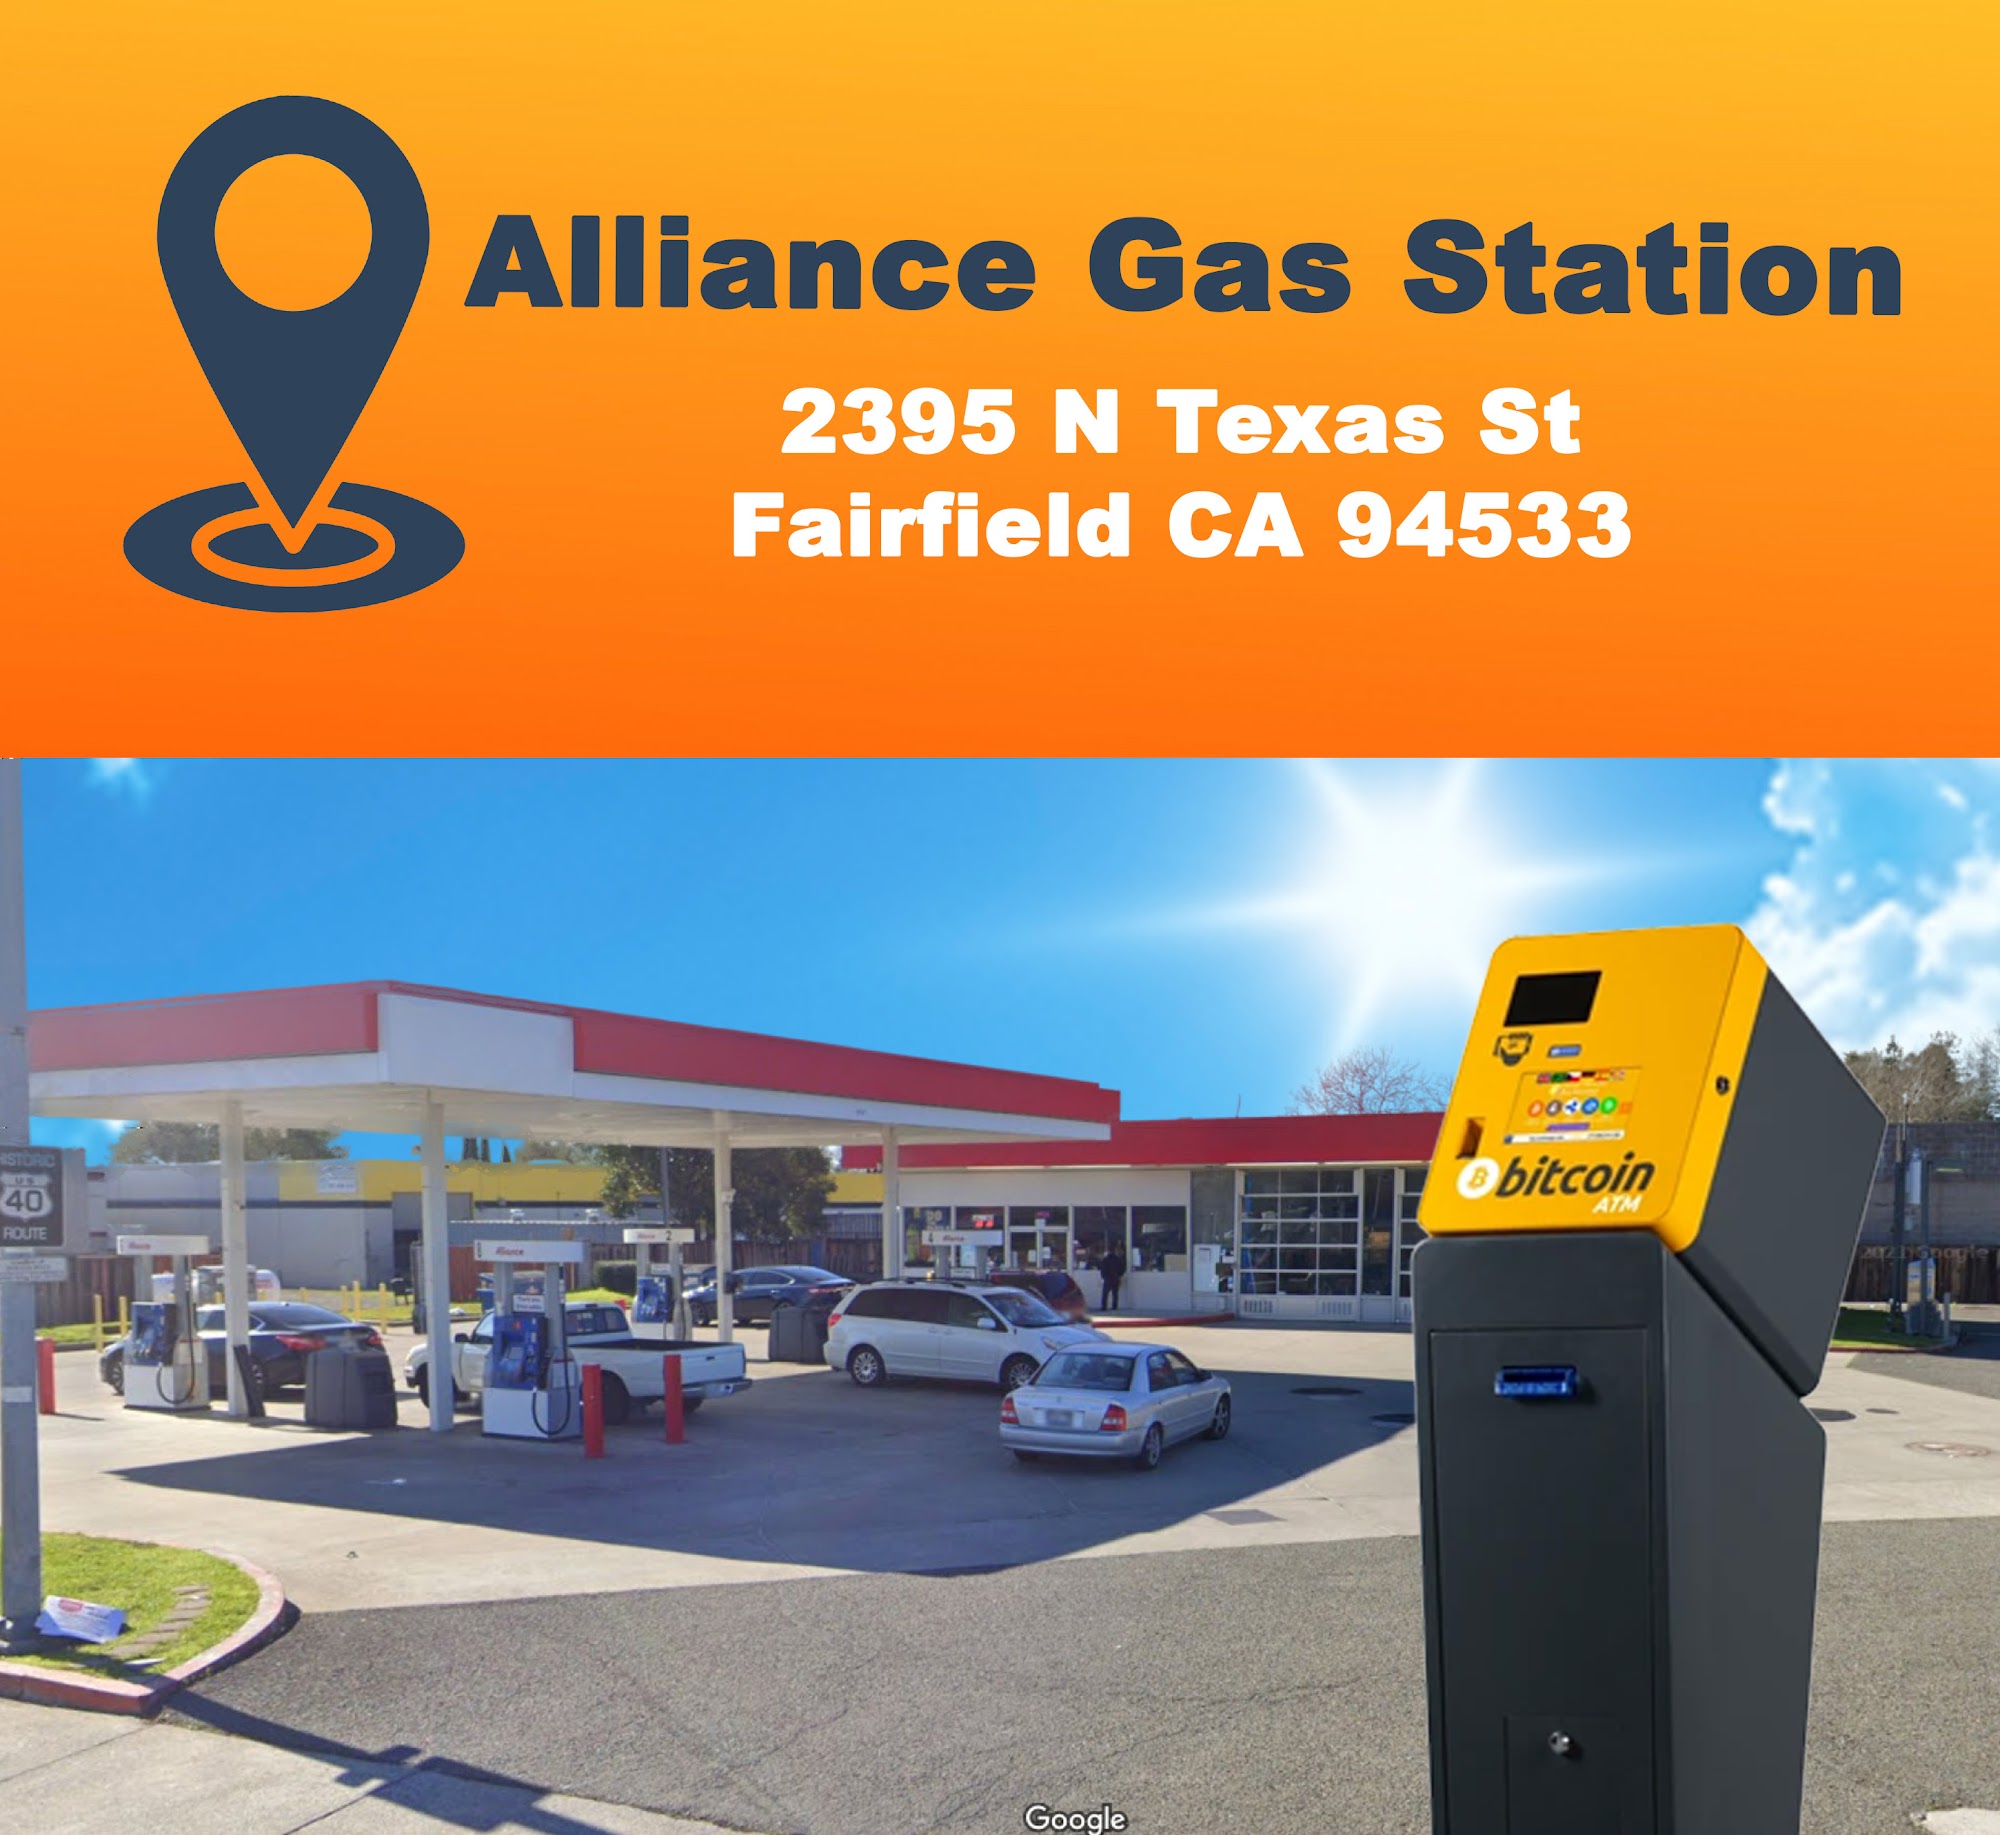 Bitcoin ATM Fairfield - Coinhub 2395 N Texas St, Fairfield